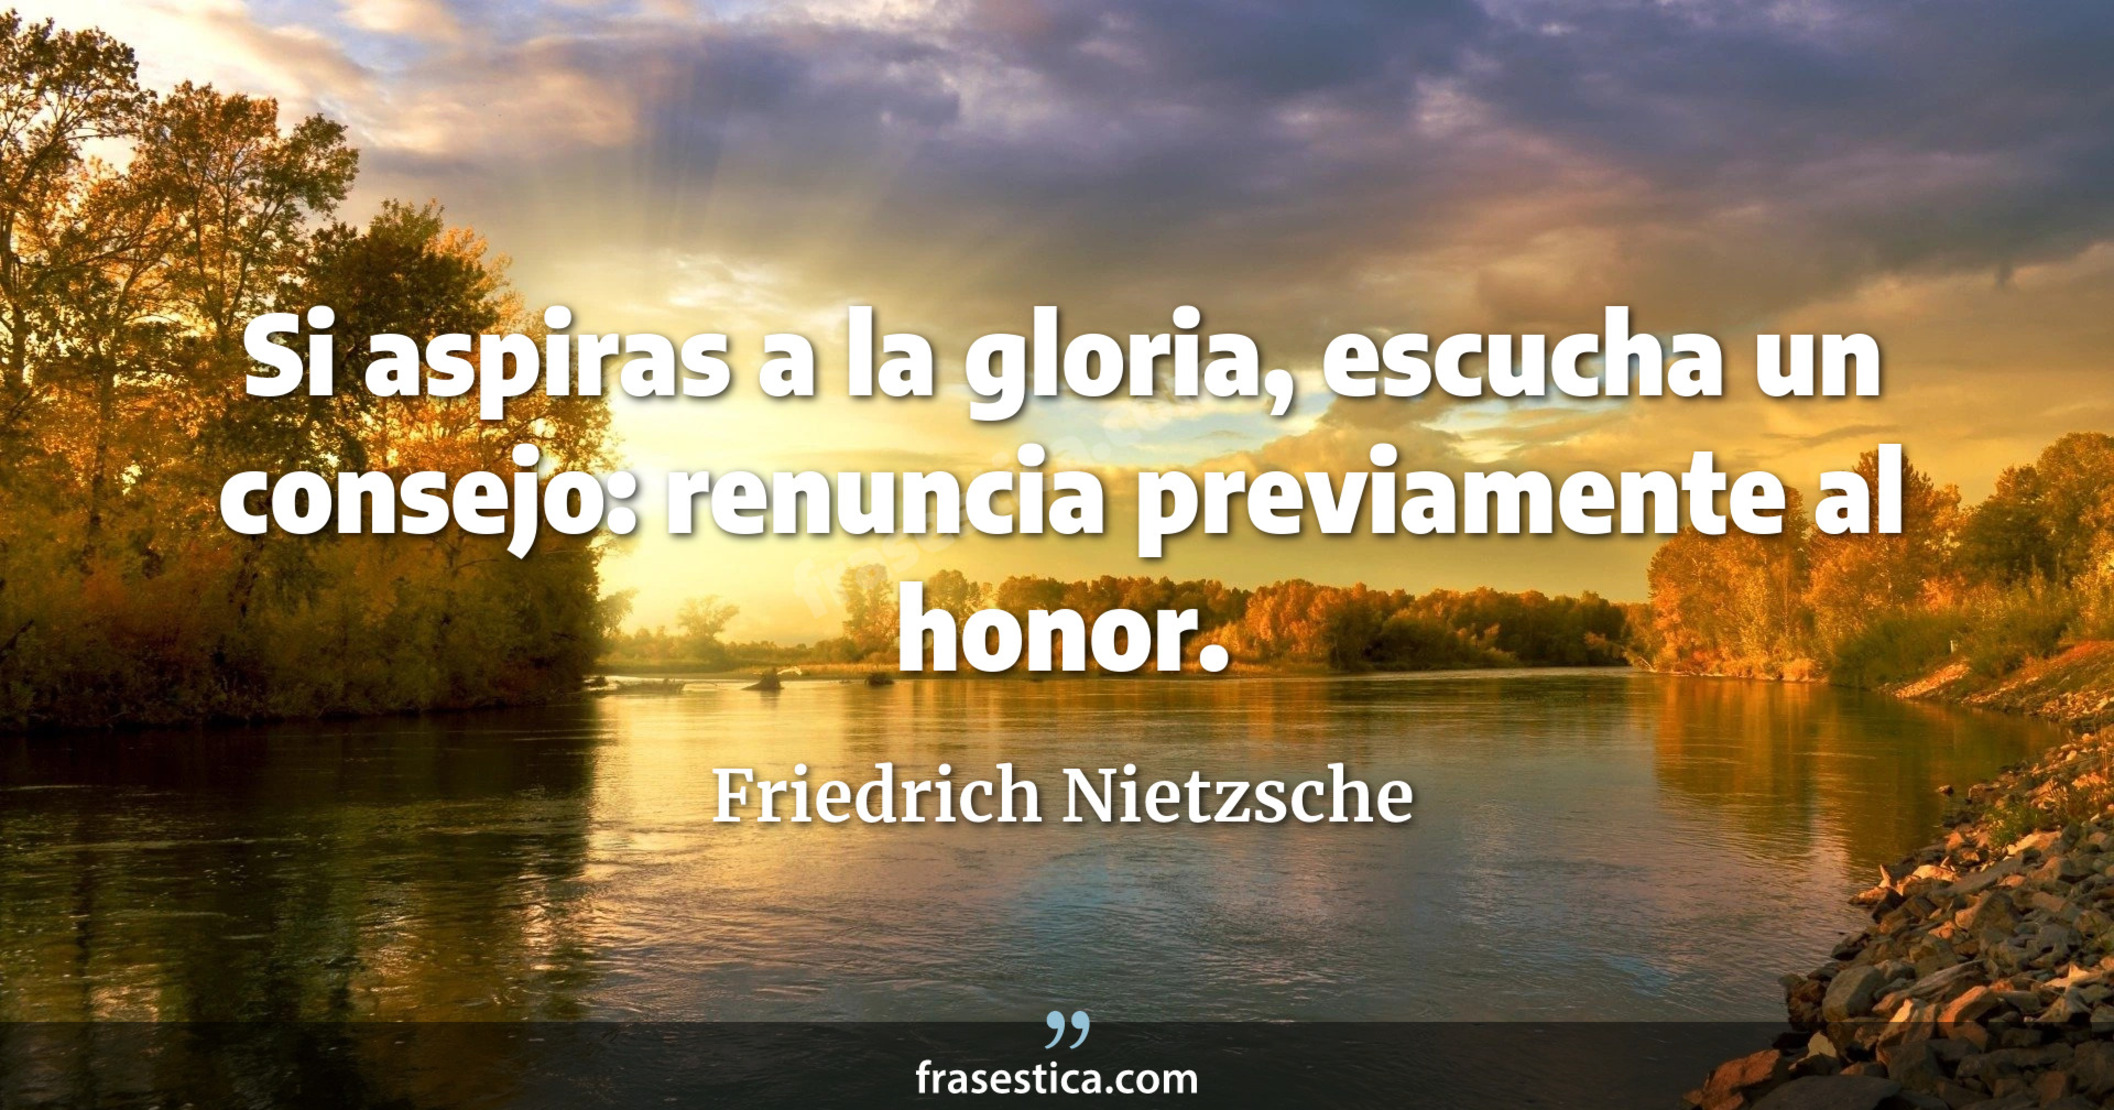 Si aspiras a la gloria, escucha un consejo: renuncia previamente al honor. - Friedrich Nietzsche